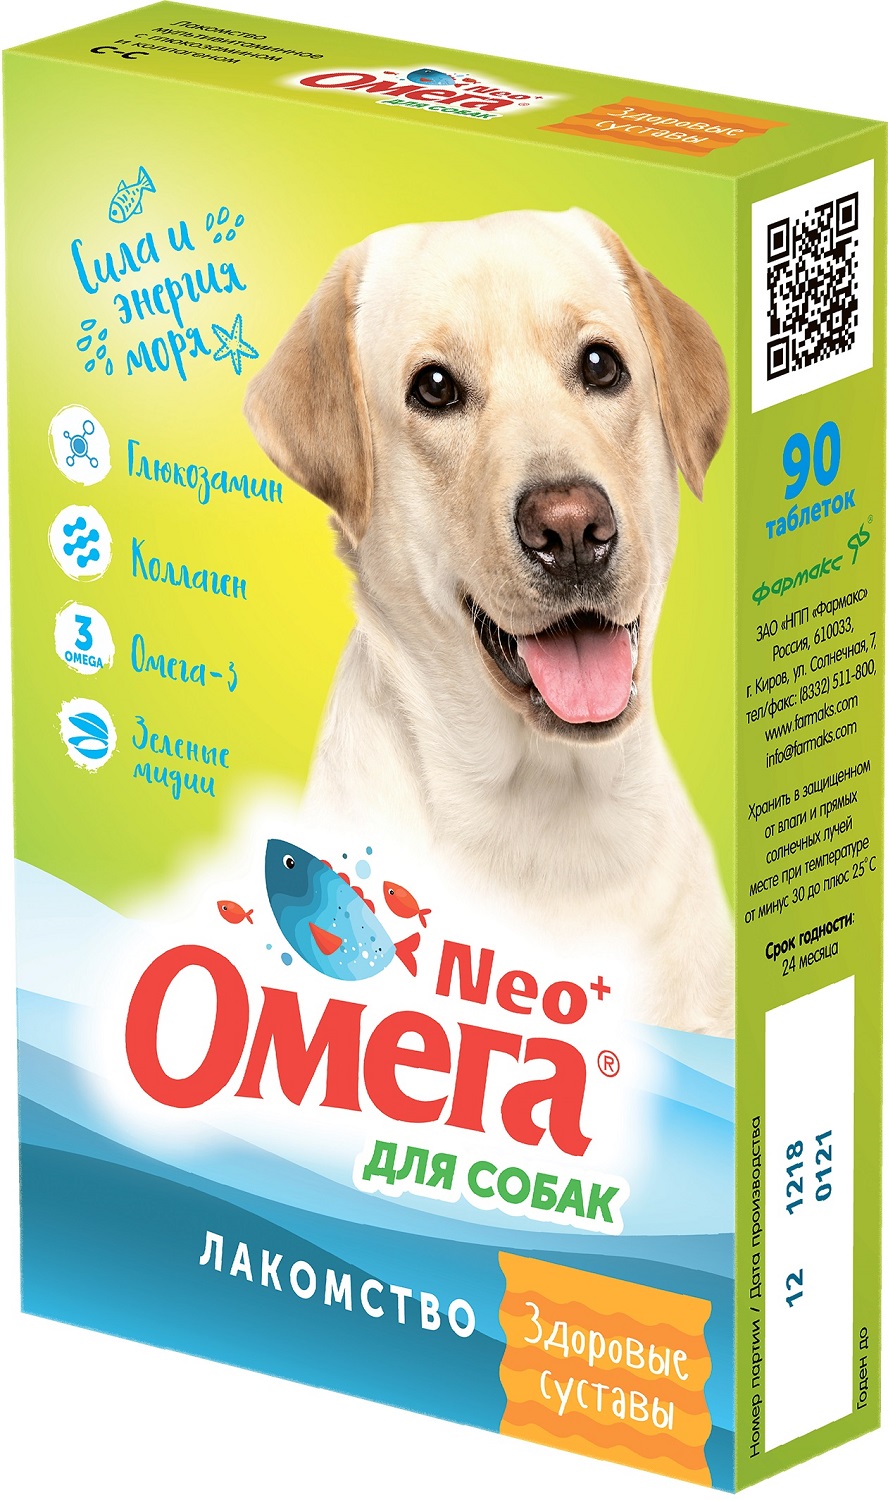 Фармакс Омега Neo+ Мультивитаминное лакомство с глюкозамином и коллагеном для здоровых суставов у собак, 90 таблеток 